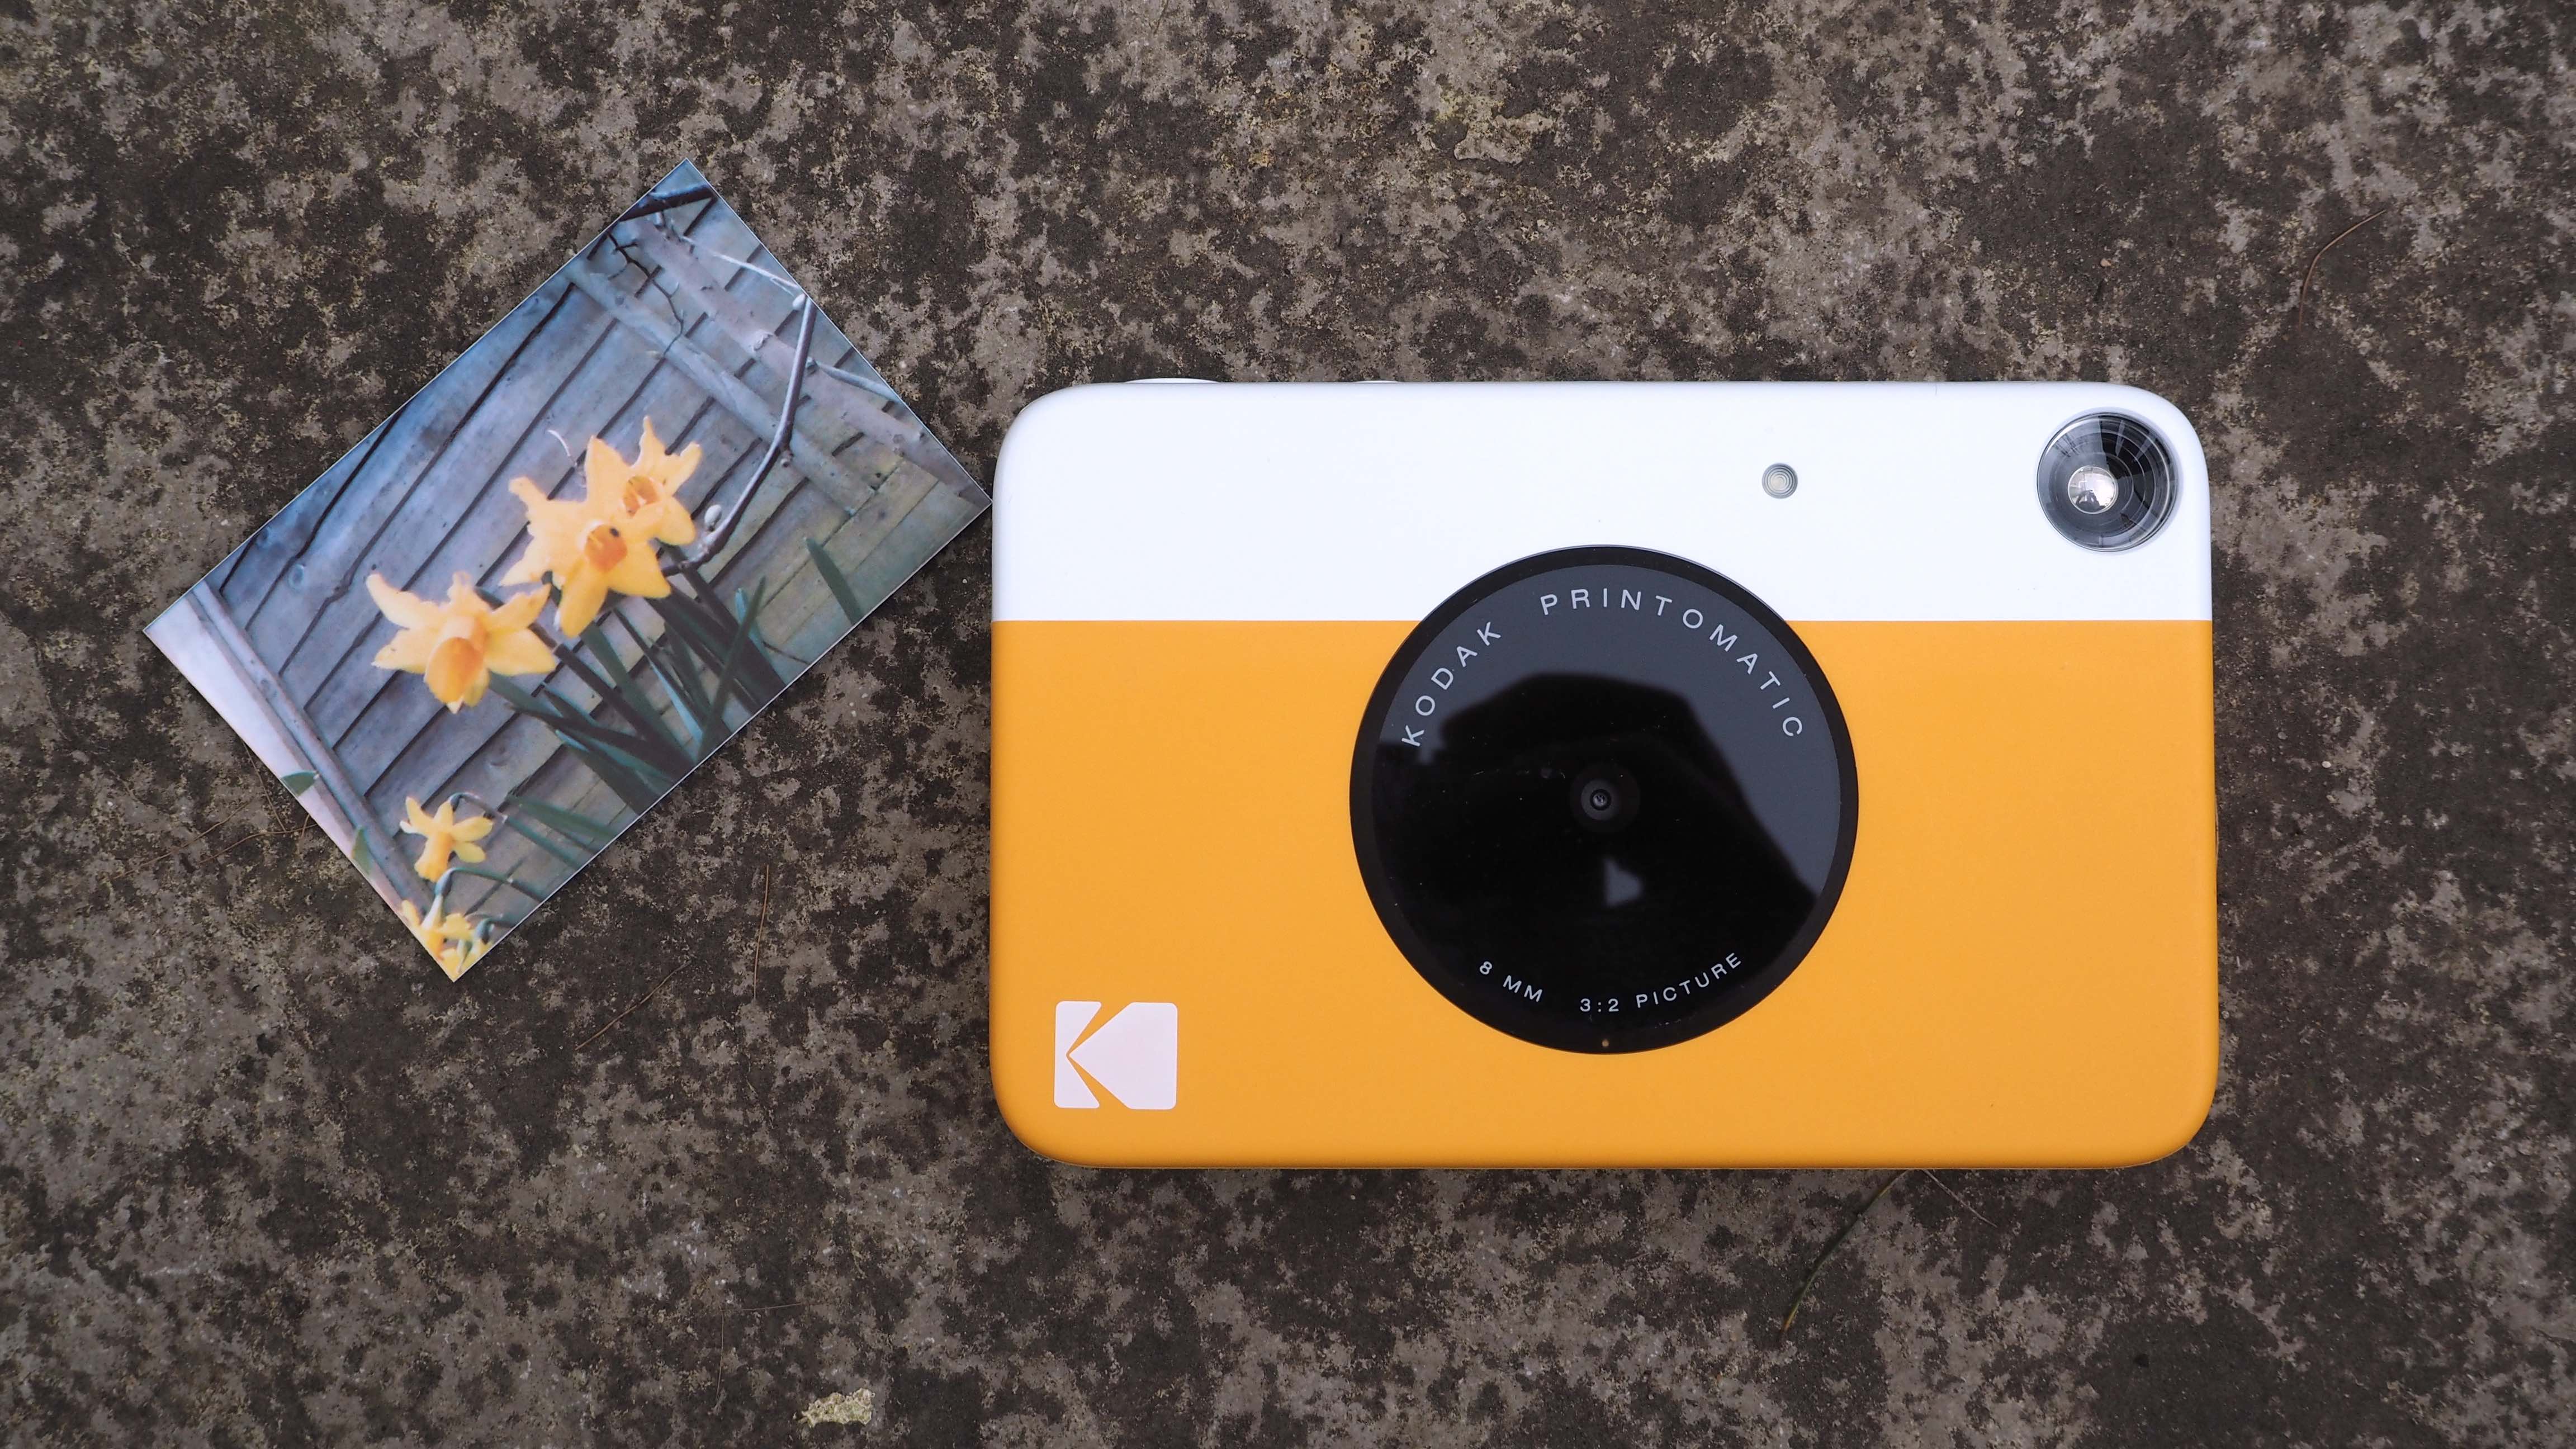 Kodak Printomatic Instant Print Digital Camera review